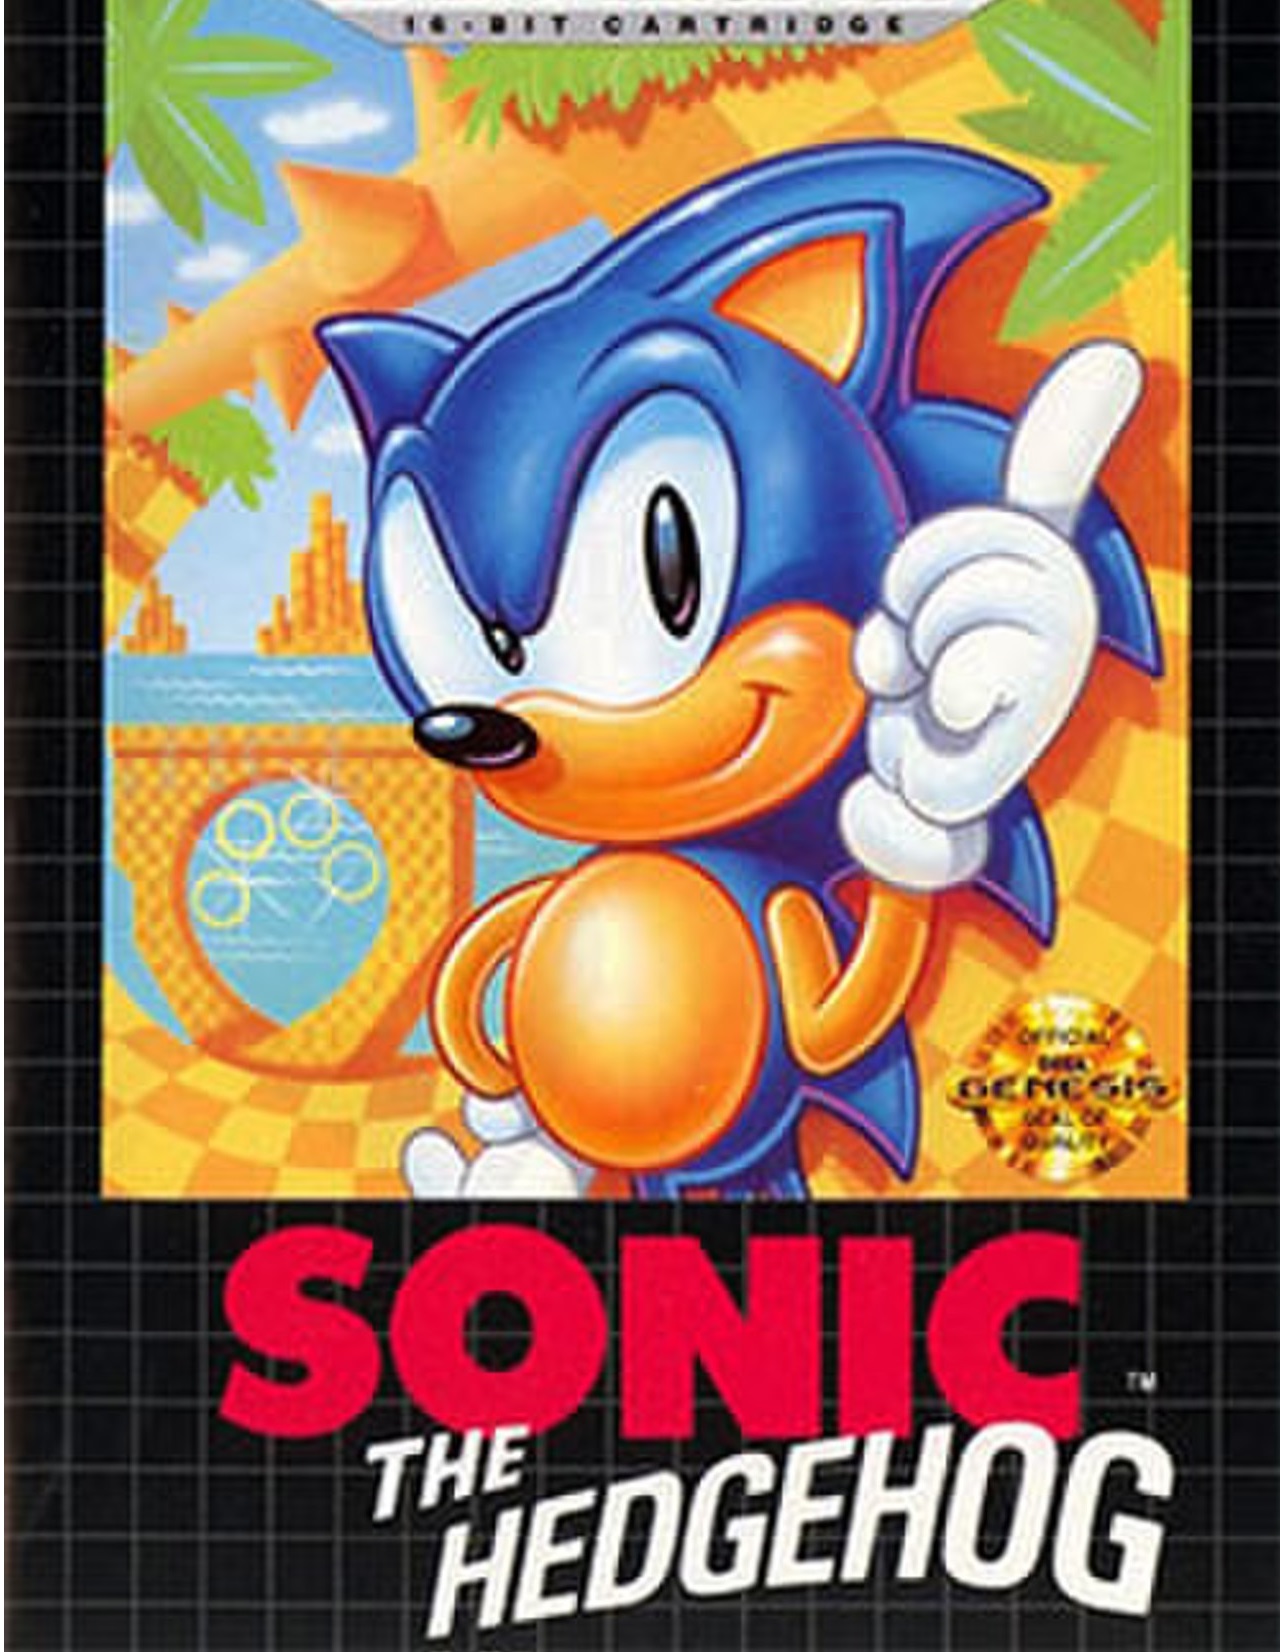 Sonic The Hedgehog no Jogos 360